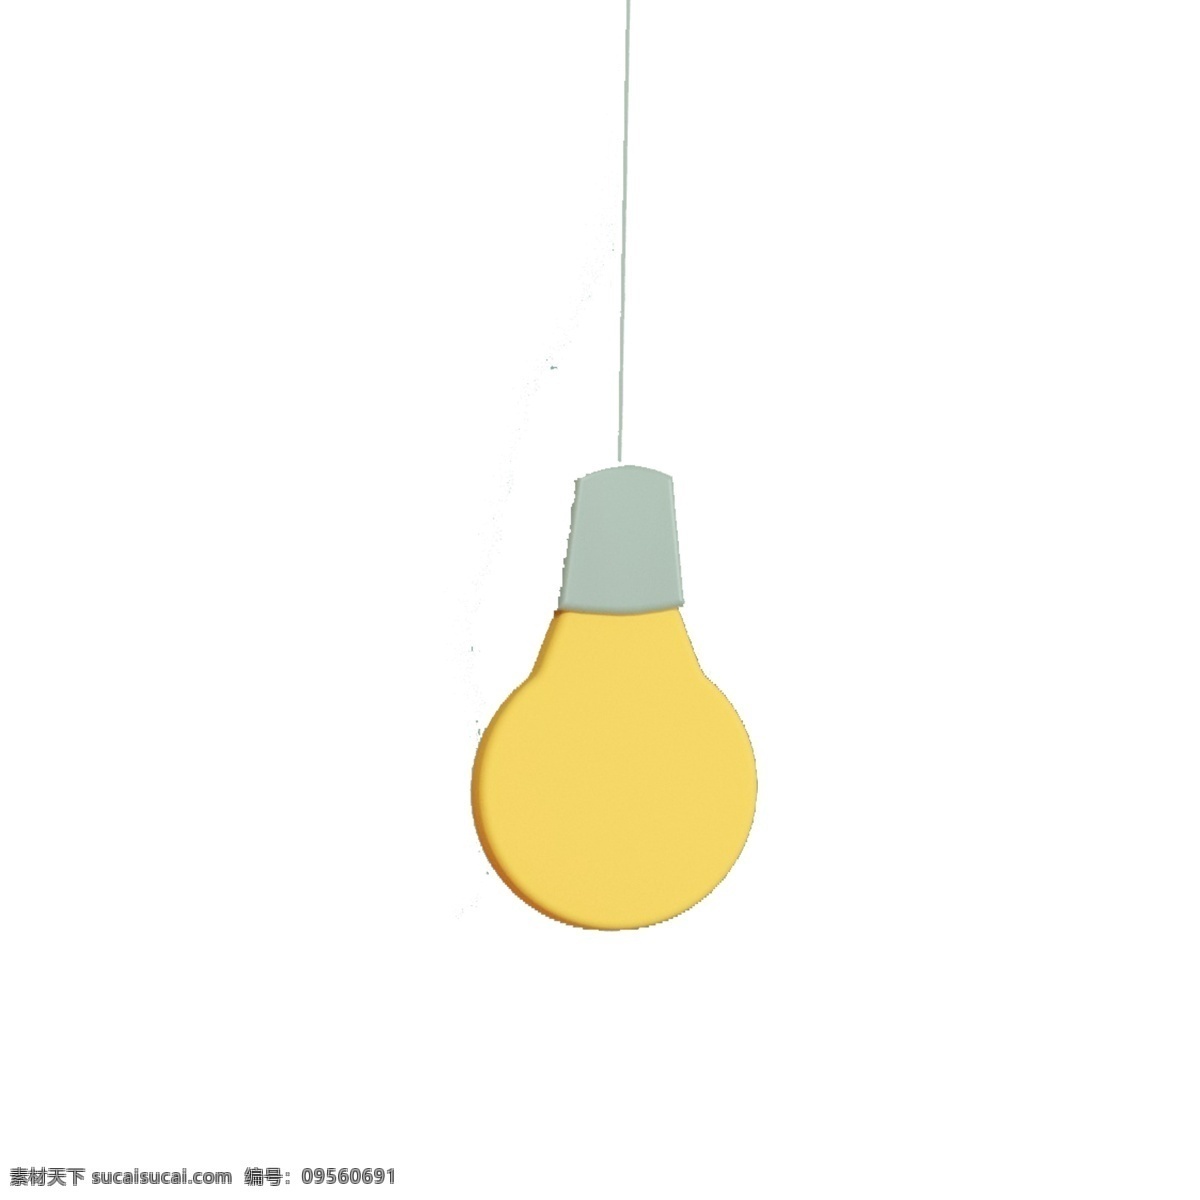 黄色 灯泡 免 抠 图 装饰灯泡 照明灯具 卡通图案 卡通插画 卡通小灯泡 电灯 黄色的灯泡 免抠图